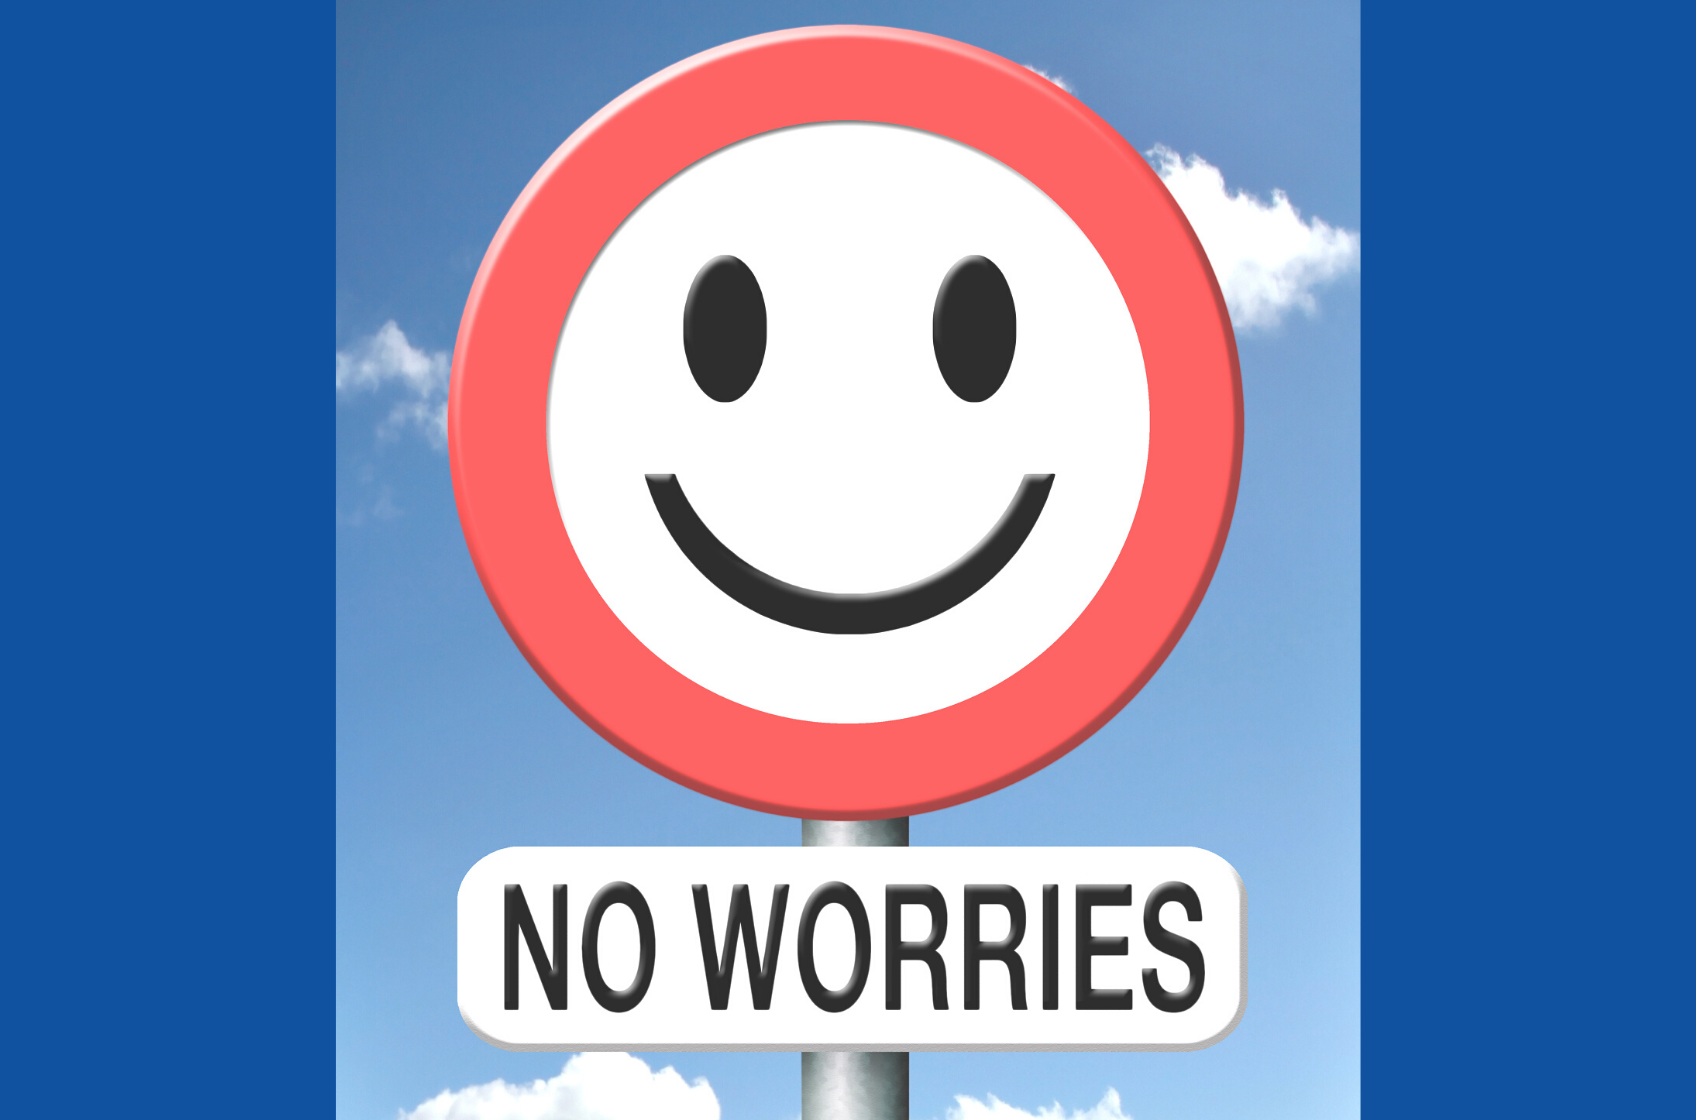 「No worries」は万能表現【意味と使い方を解説】